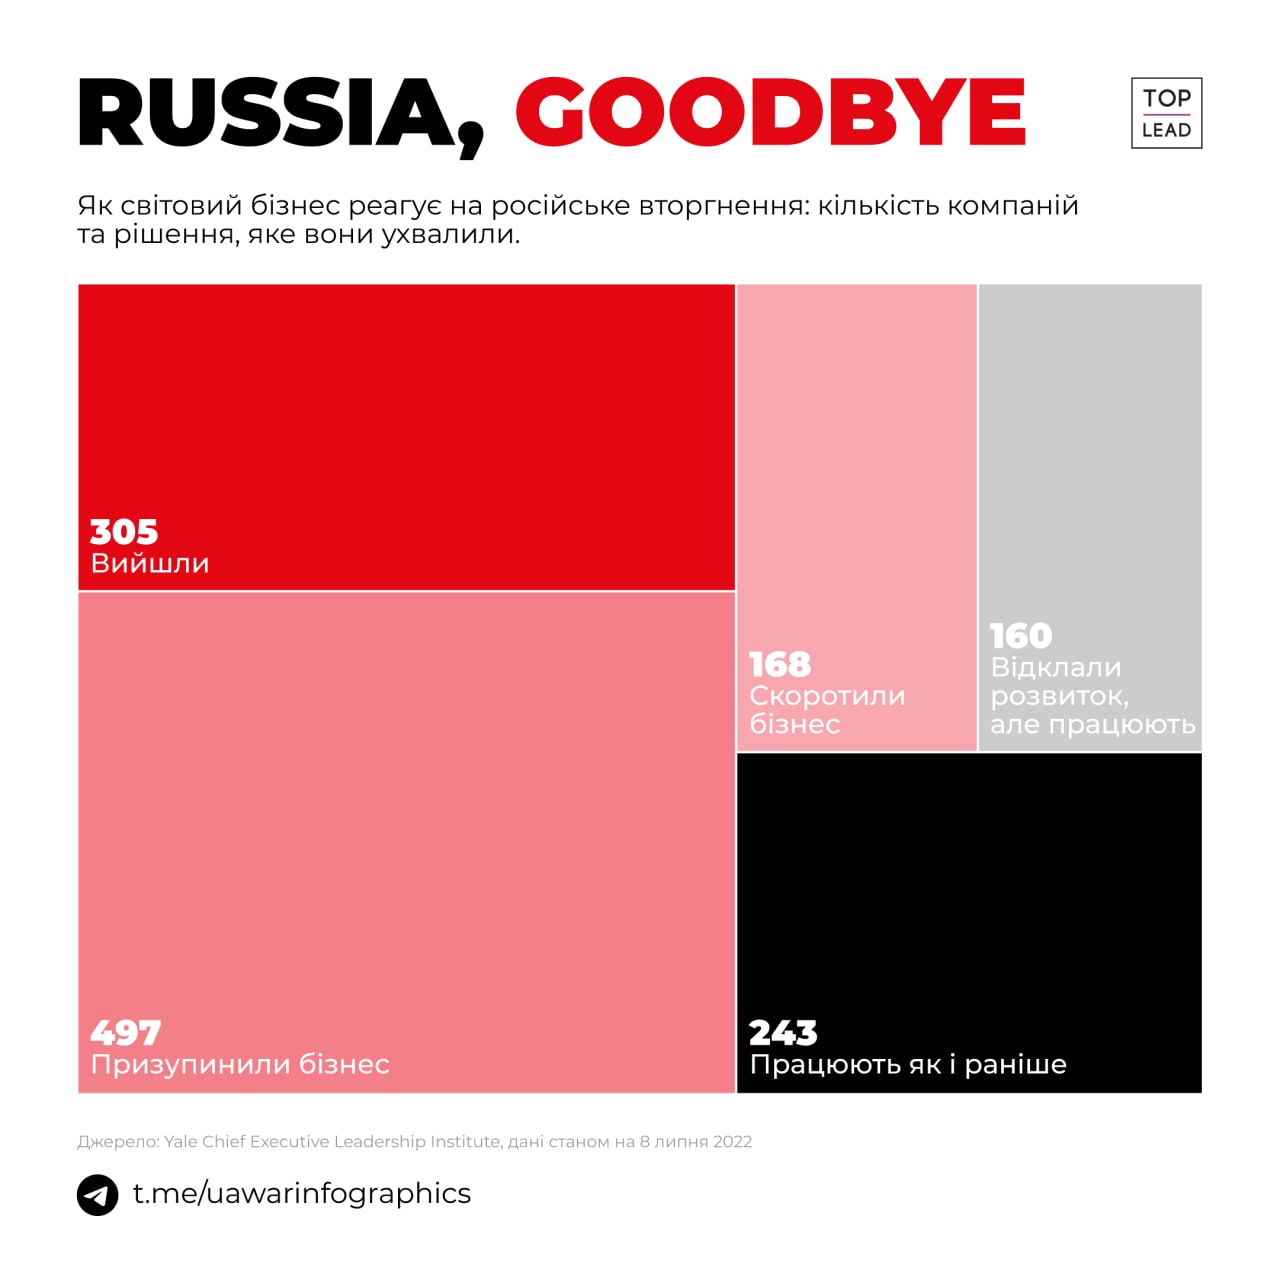 russia, goodbye! (ІНФОГРАФІКА)